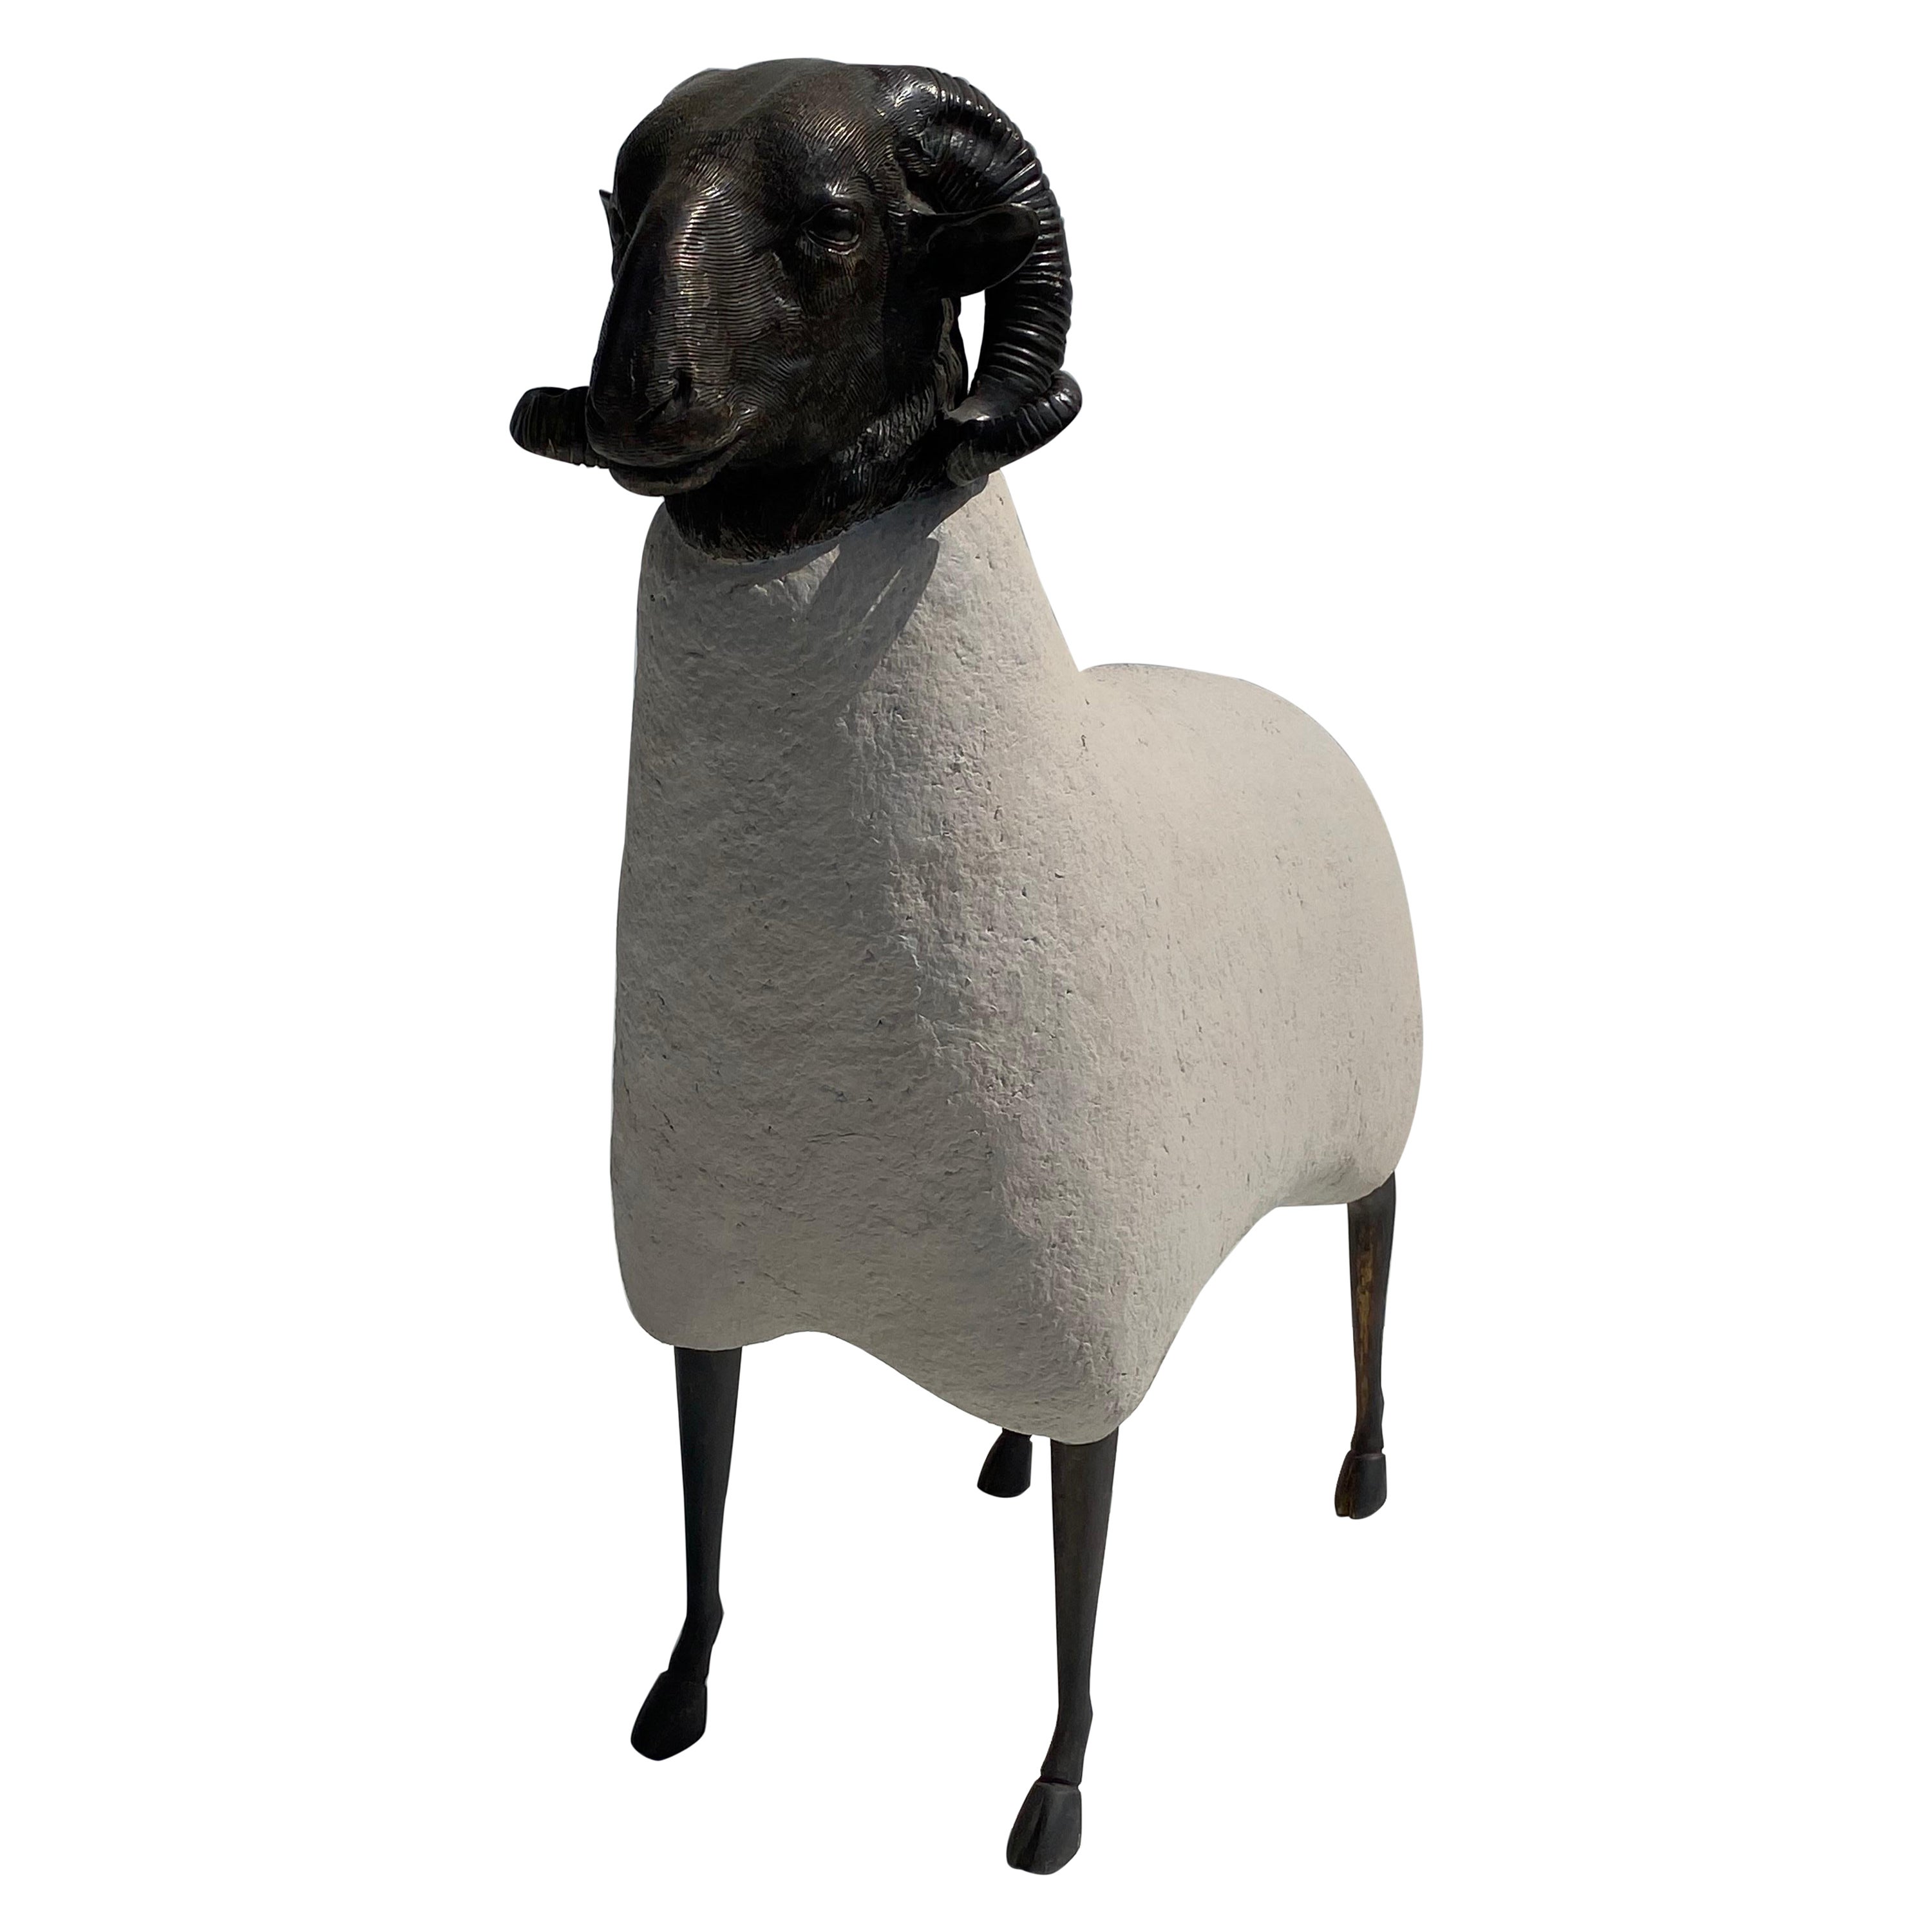 Patinated Brass Sheep / Ram Sculpture